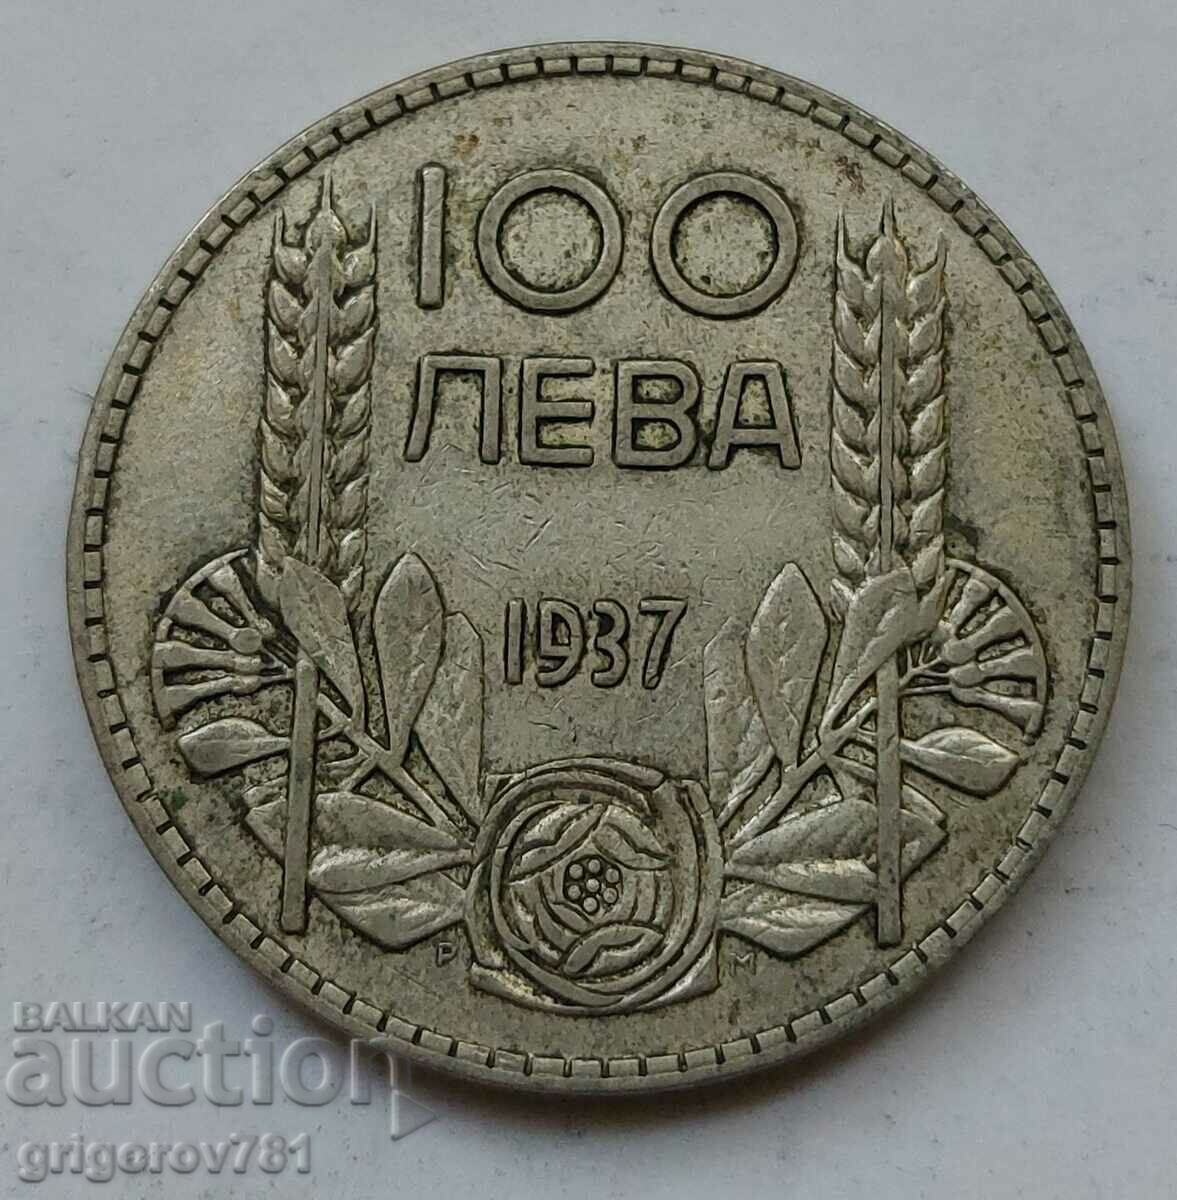 100 leva silver Bulgaria 1937 - silver coin #80